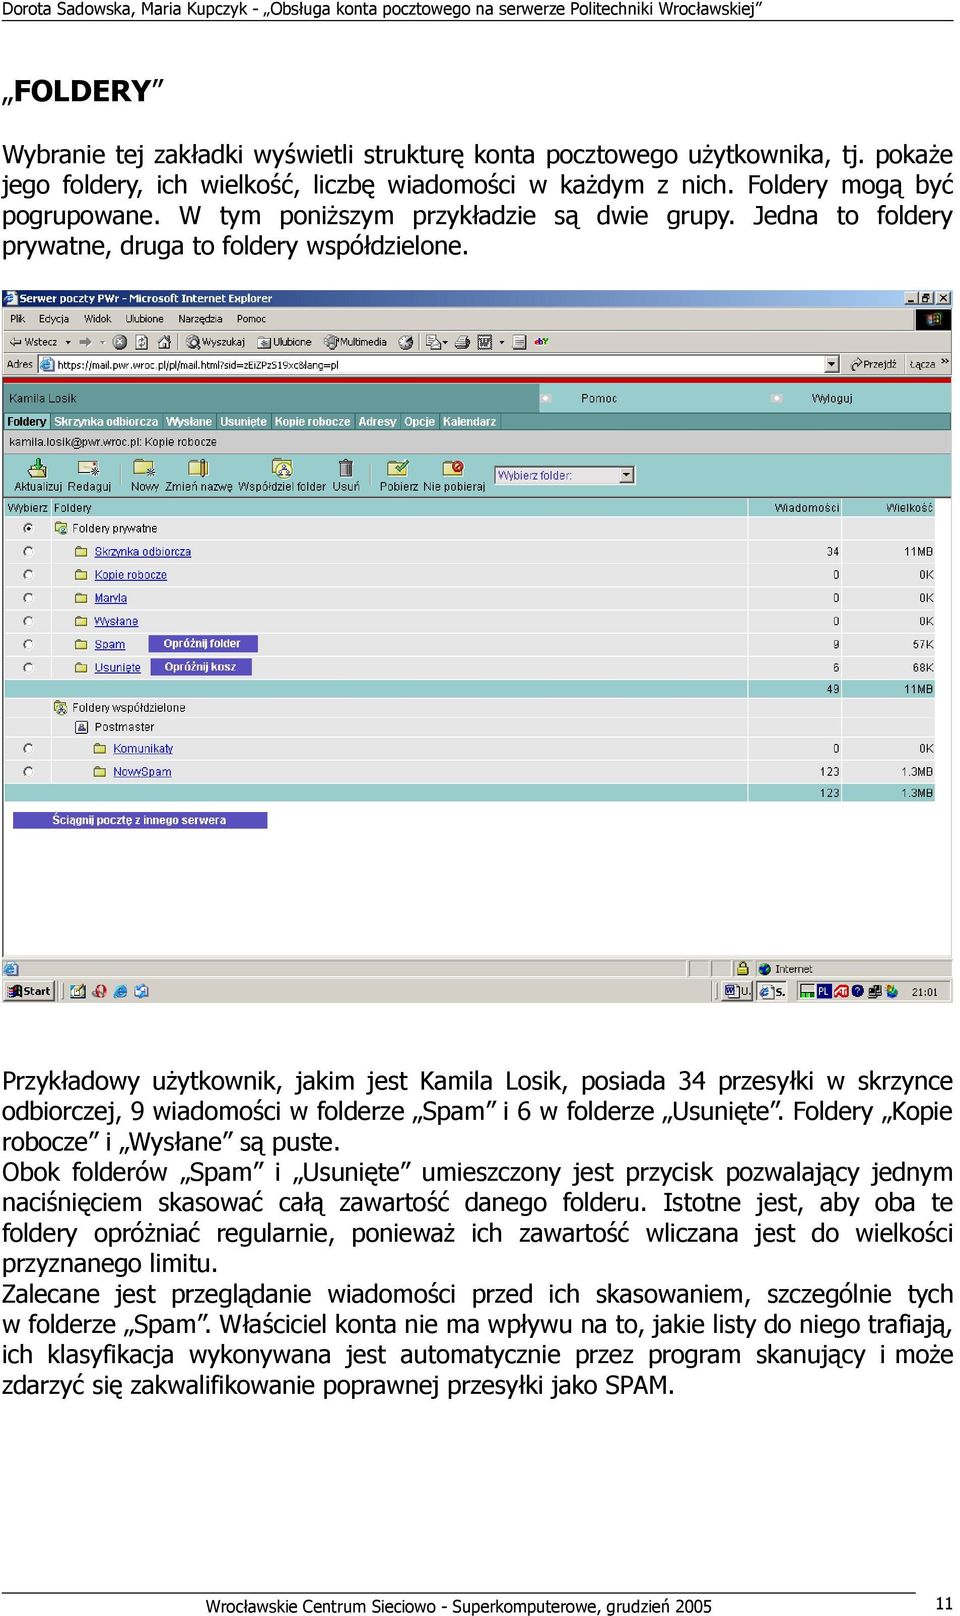 Przykładowy użytkownik, jakim jest Kamila Losik, posiada 34 przesyłki w skrzynce odbiorczej, 9 wiadomości w folderze Spam i 6 w folderze Usunięte. Foldery Kopie robocze i Wysłane są puste.